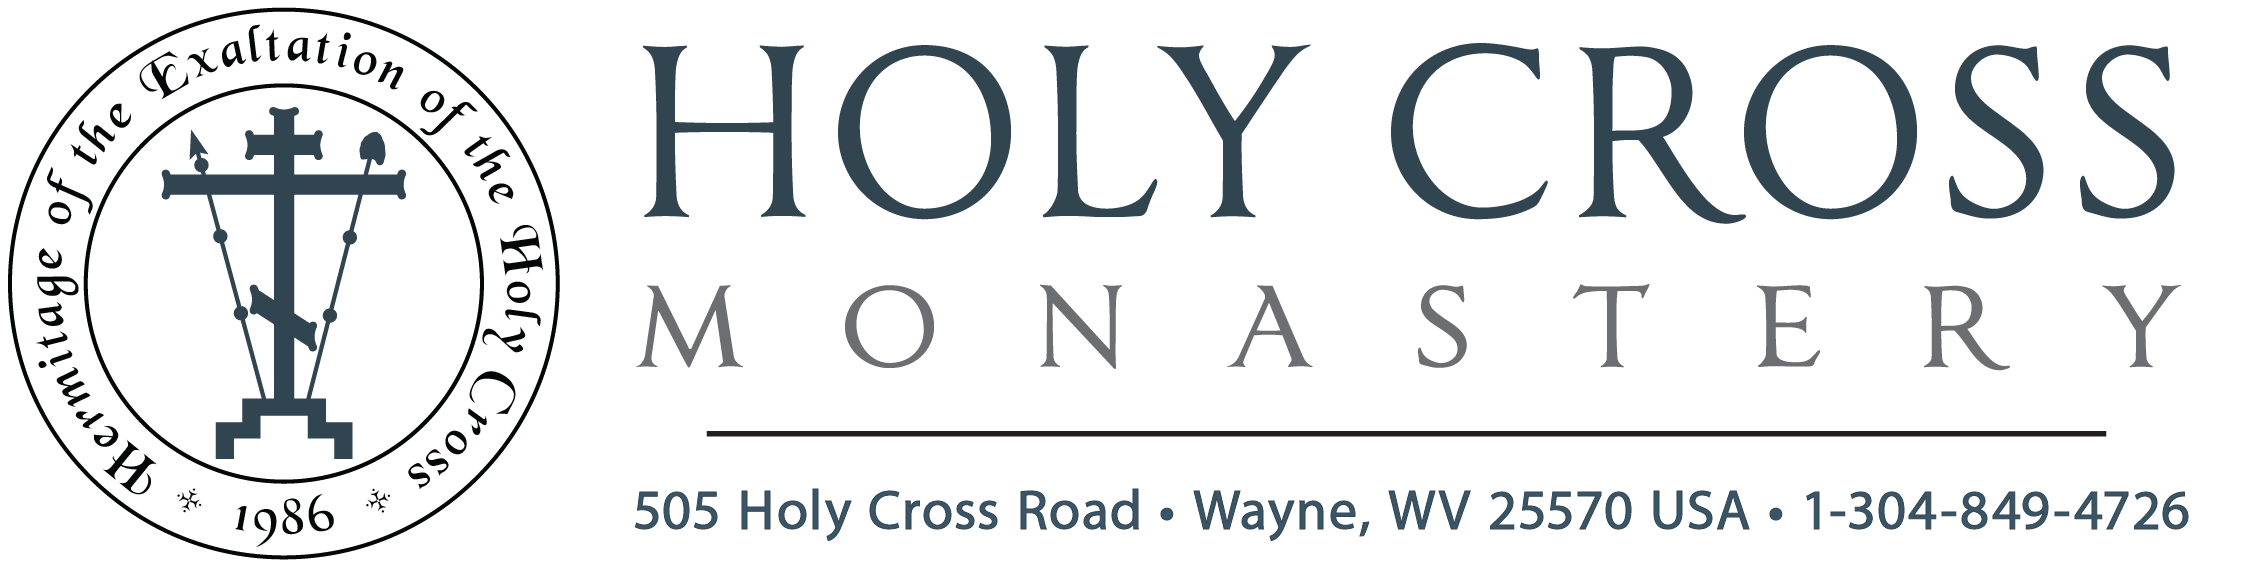 Holy Cross Monastery logo